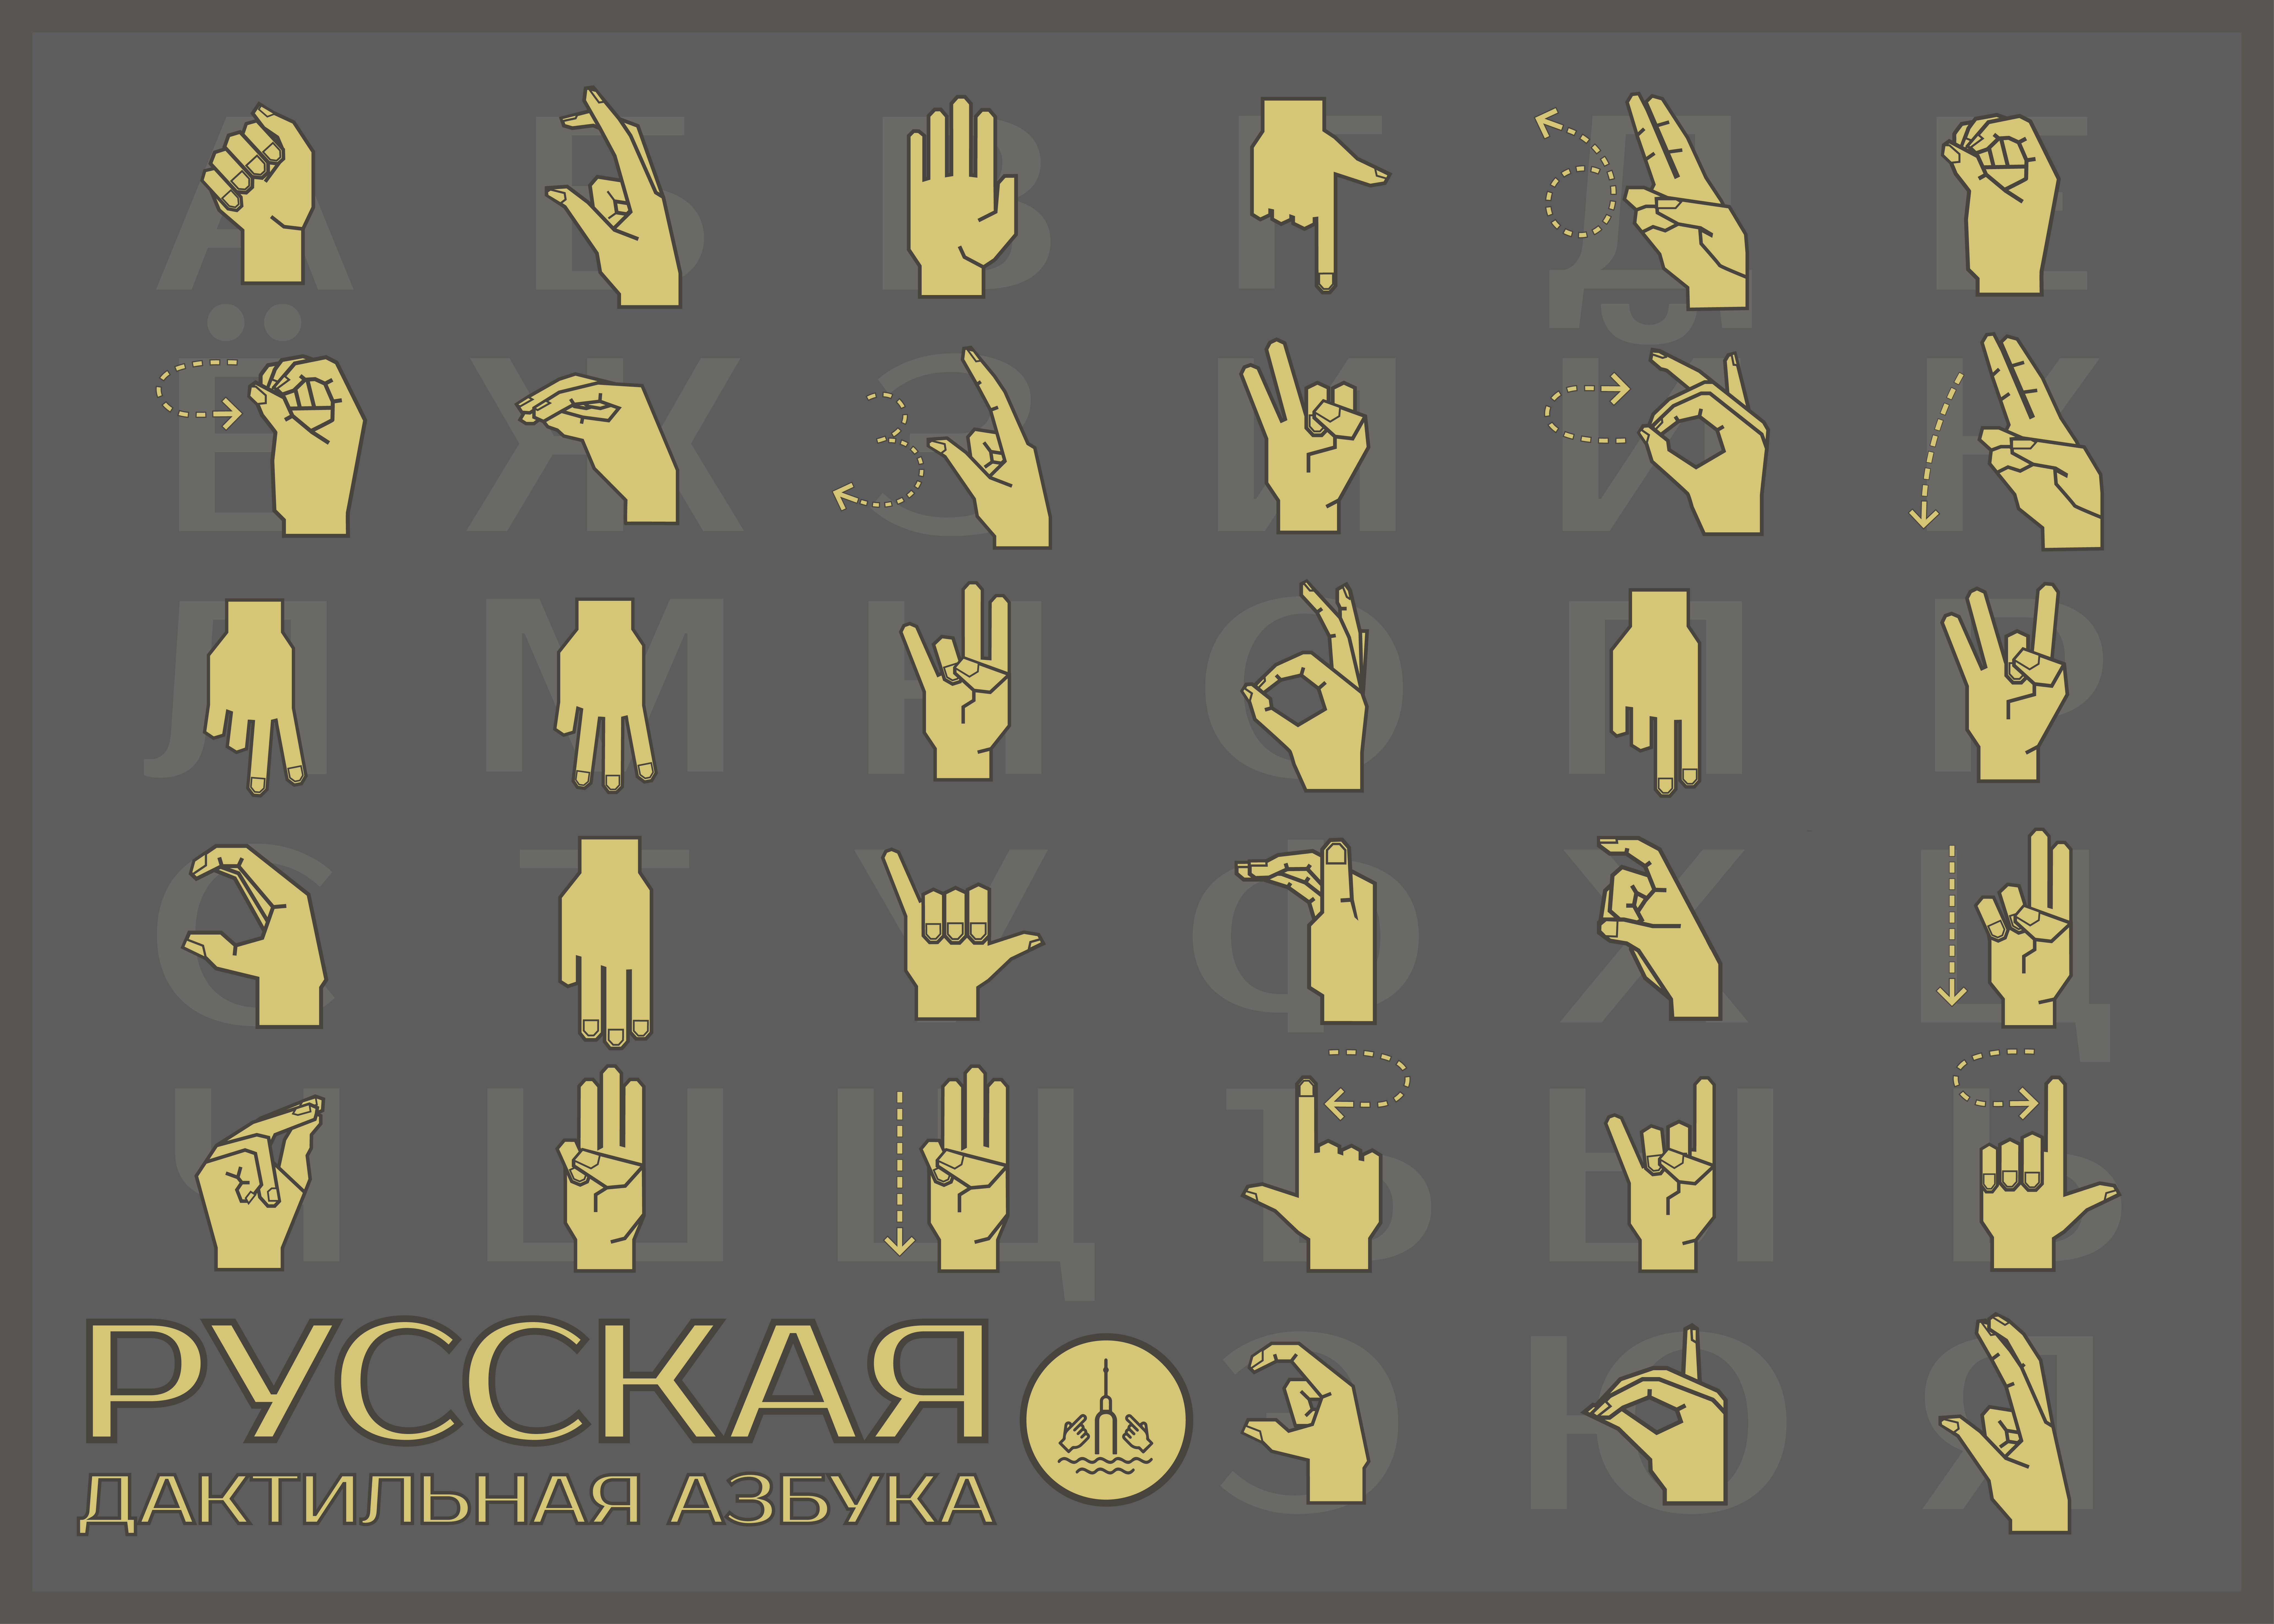 Алфавит глухих букв. Язык жестов алфавит. Русский дактильный алфавит. Буквы жестами. Язык жестов алфавит русский.